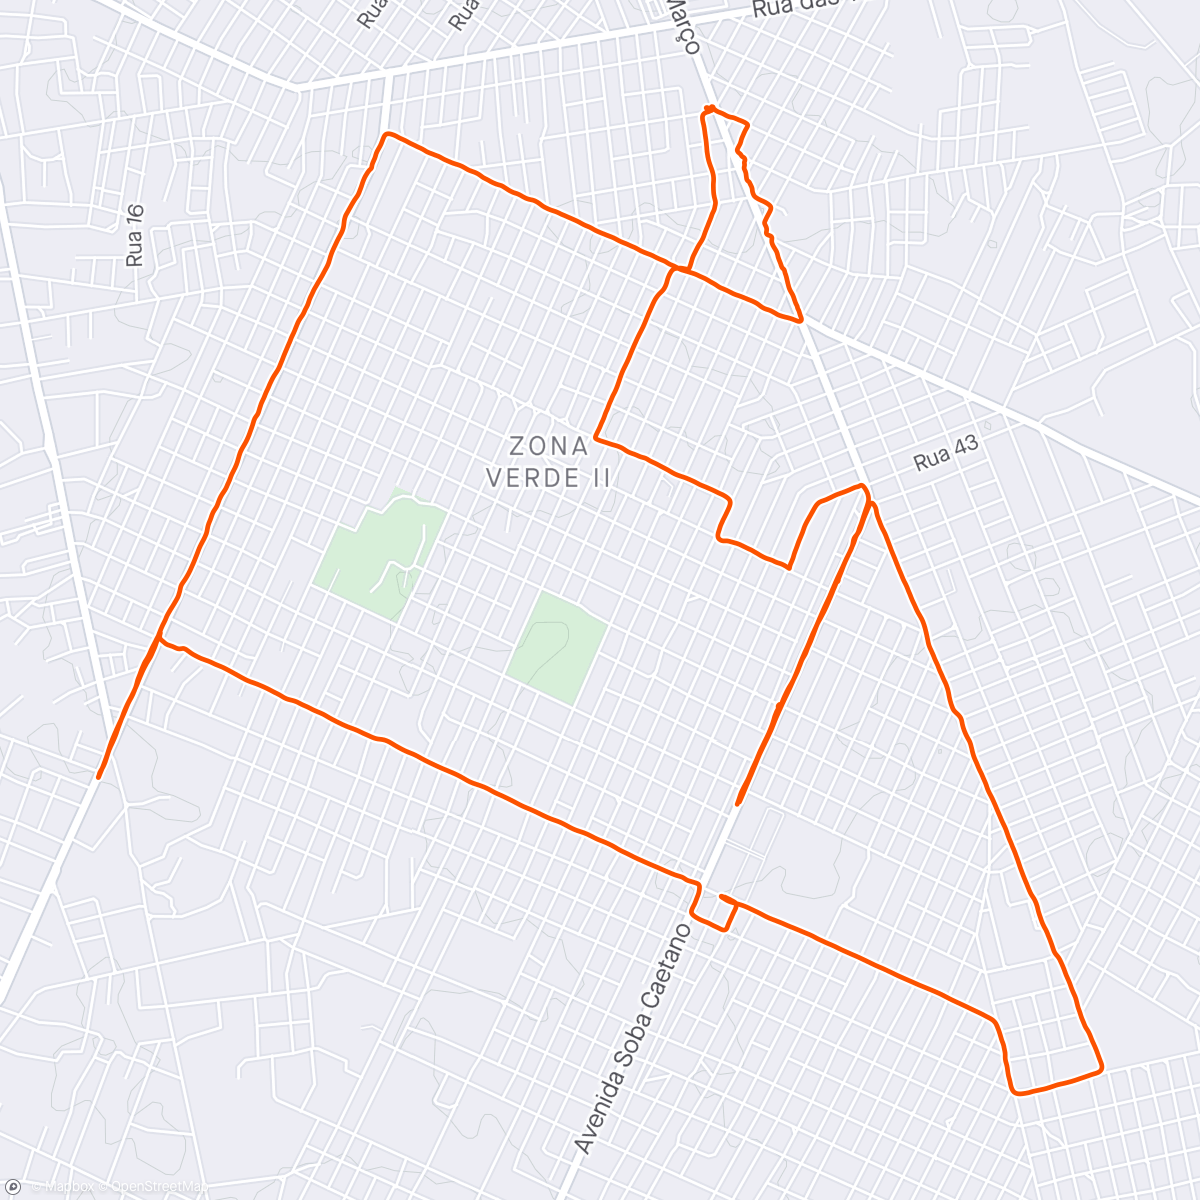 Mappa dell'attività Volta de bicicleta de montanha matinal